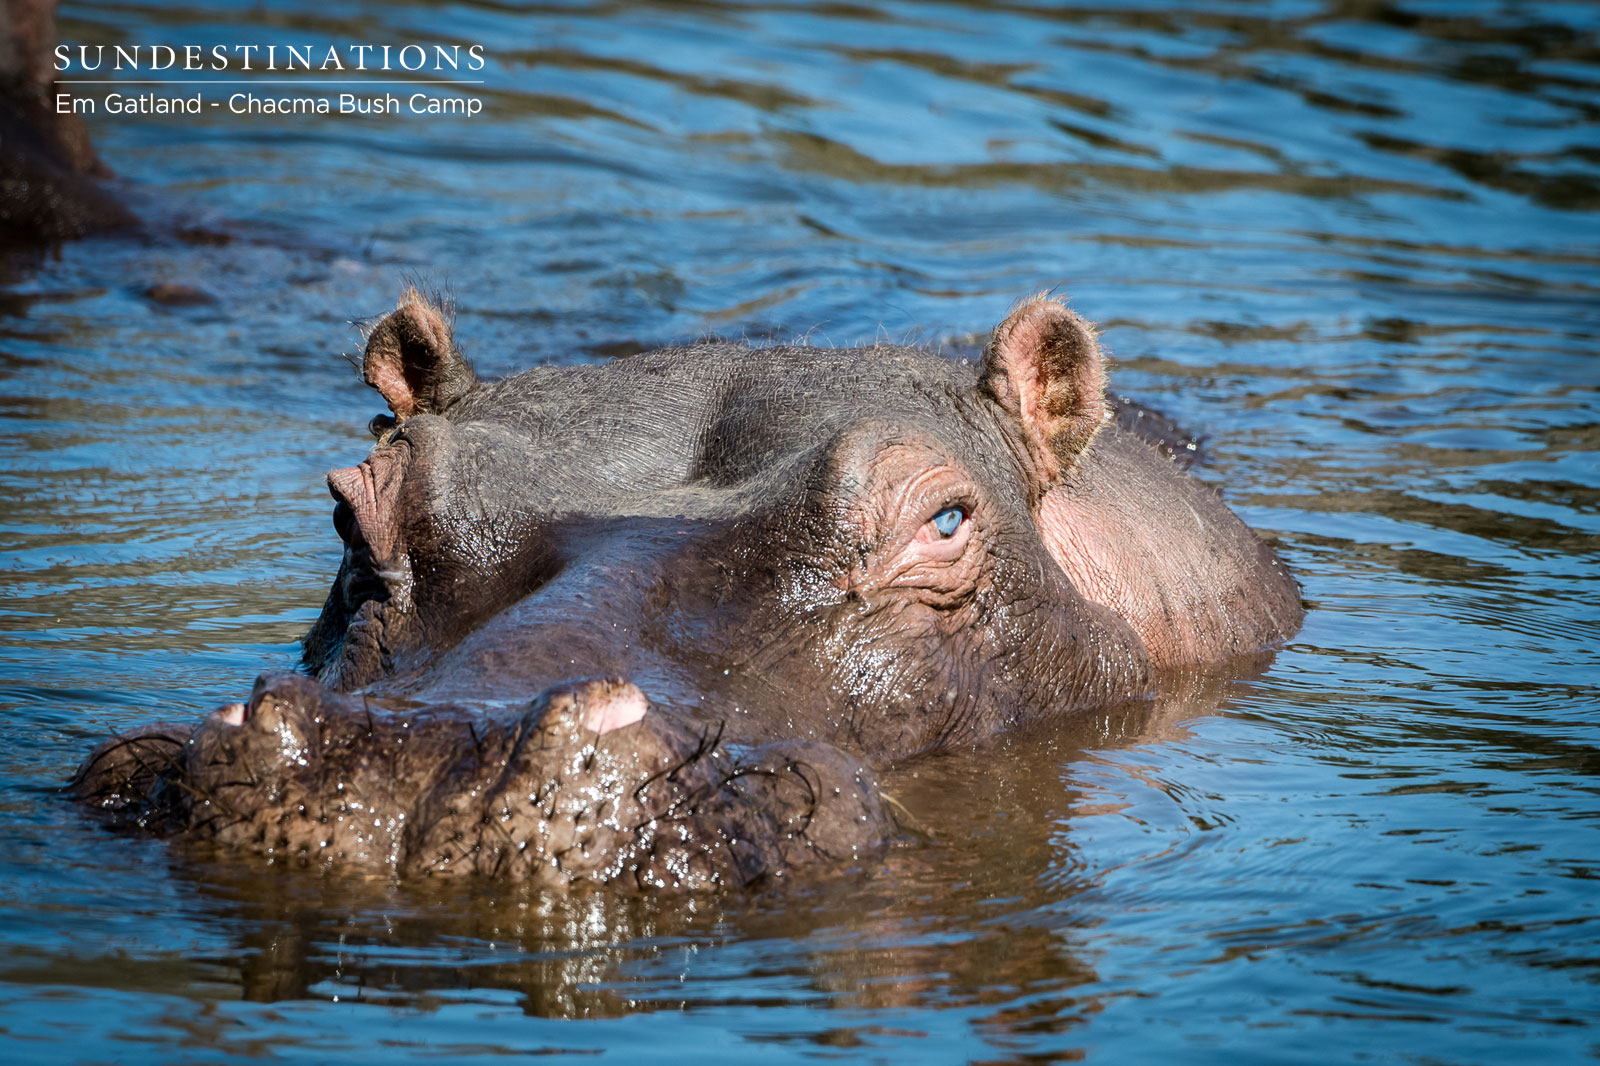 Hippo at Chacma Bush Camp